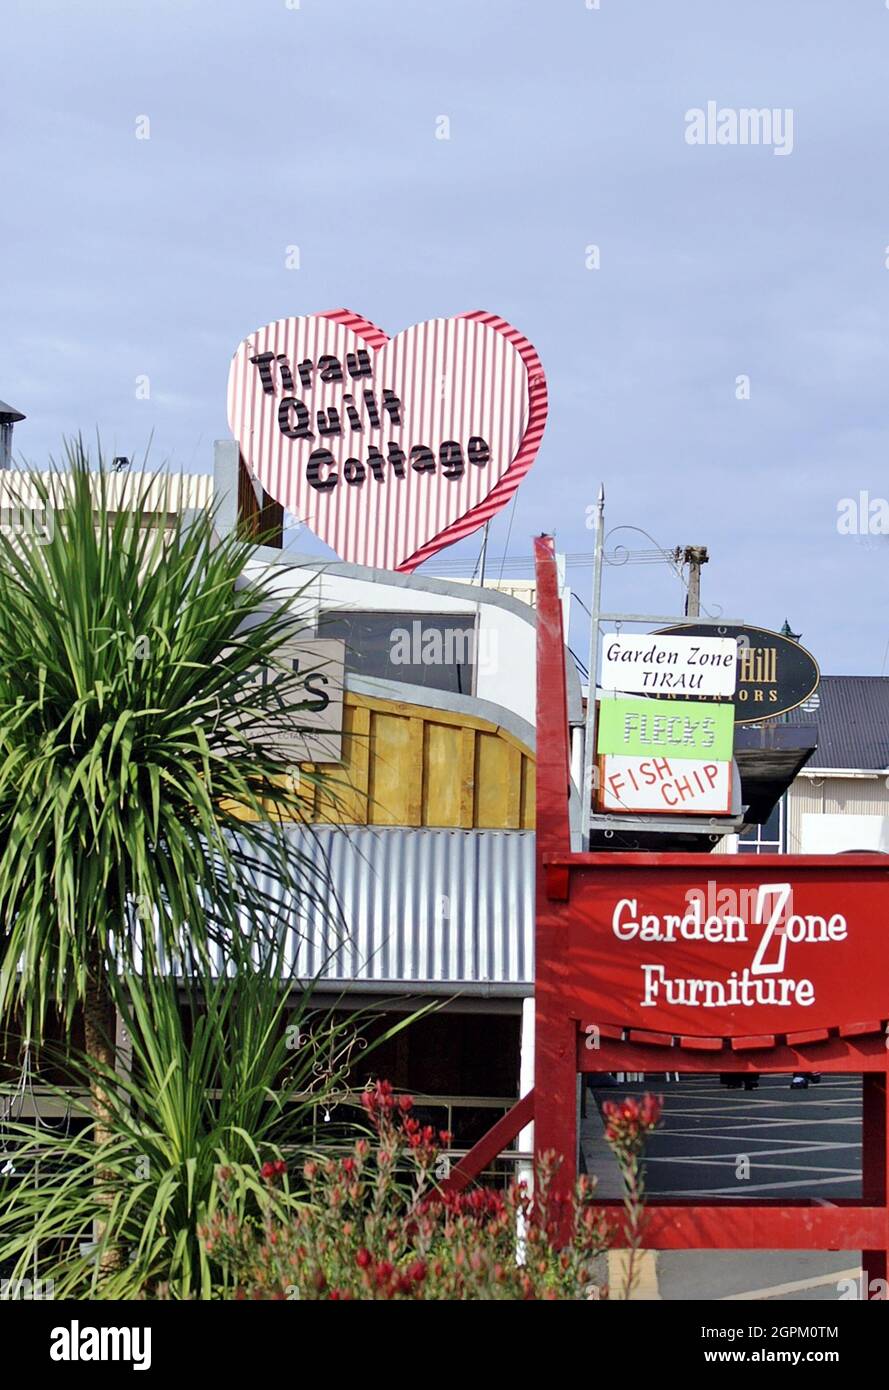 Tirau, una pequeña ciudad en la región de Waikato en la isla norte de Nueva Zelanda, es conocida como la “capital ondulado del mundo”. El hierro corrugado, utilizado en toda Nueva Zelanda, se utiliza para crear una ciudad surrealista, estrafalaria, y artsy en la cual el hierro corrugado se utiliza para crear edificios en las formas de animales, muestras de negocio artsy, Y arte público. Esta ciudad única está llena de pequeñas empresas en su calle principal, lo que proporciona una buena parada para aquellos que viajan de Hamilton a Rotorua. Foto de stock